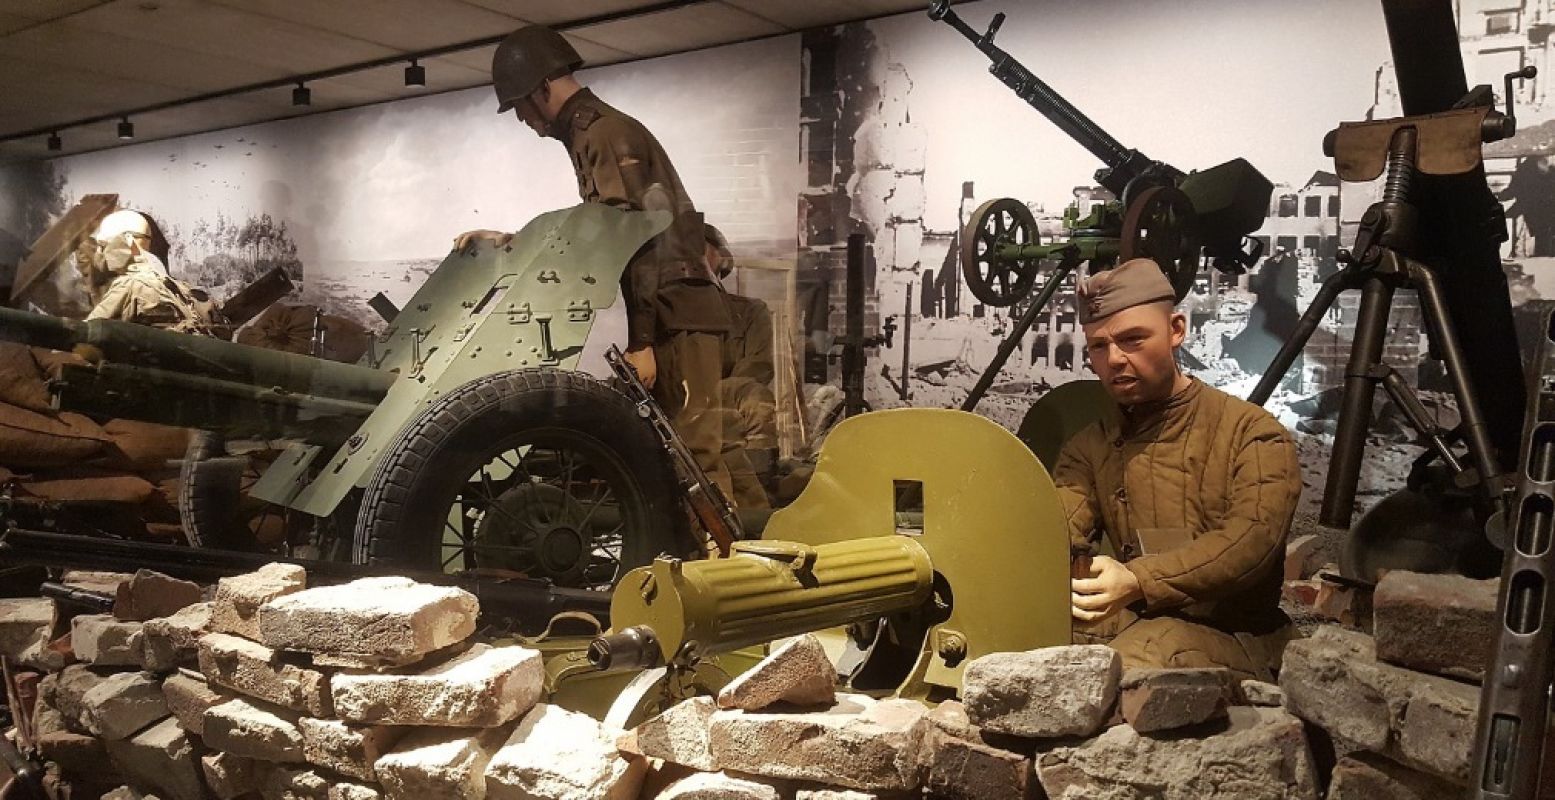 De Enigma G is te zien in de expositie Kantelpunt Europa in Oorlogsmuseum Overloon. Foto: Oorlogsmuseum Overloon.